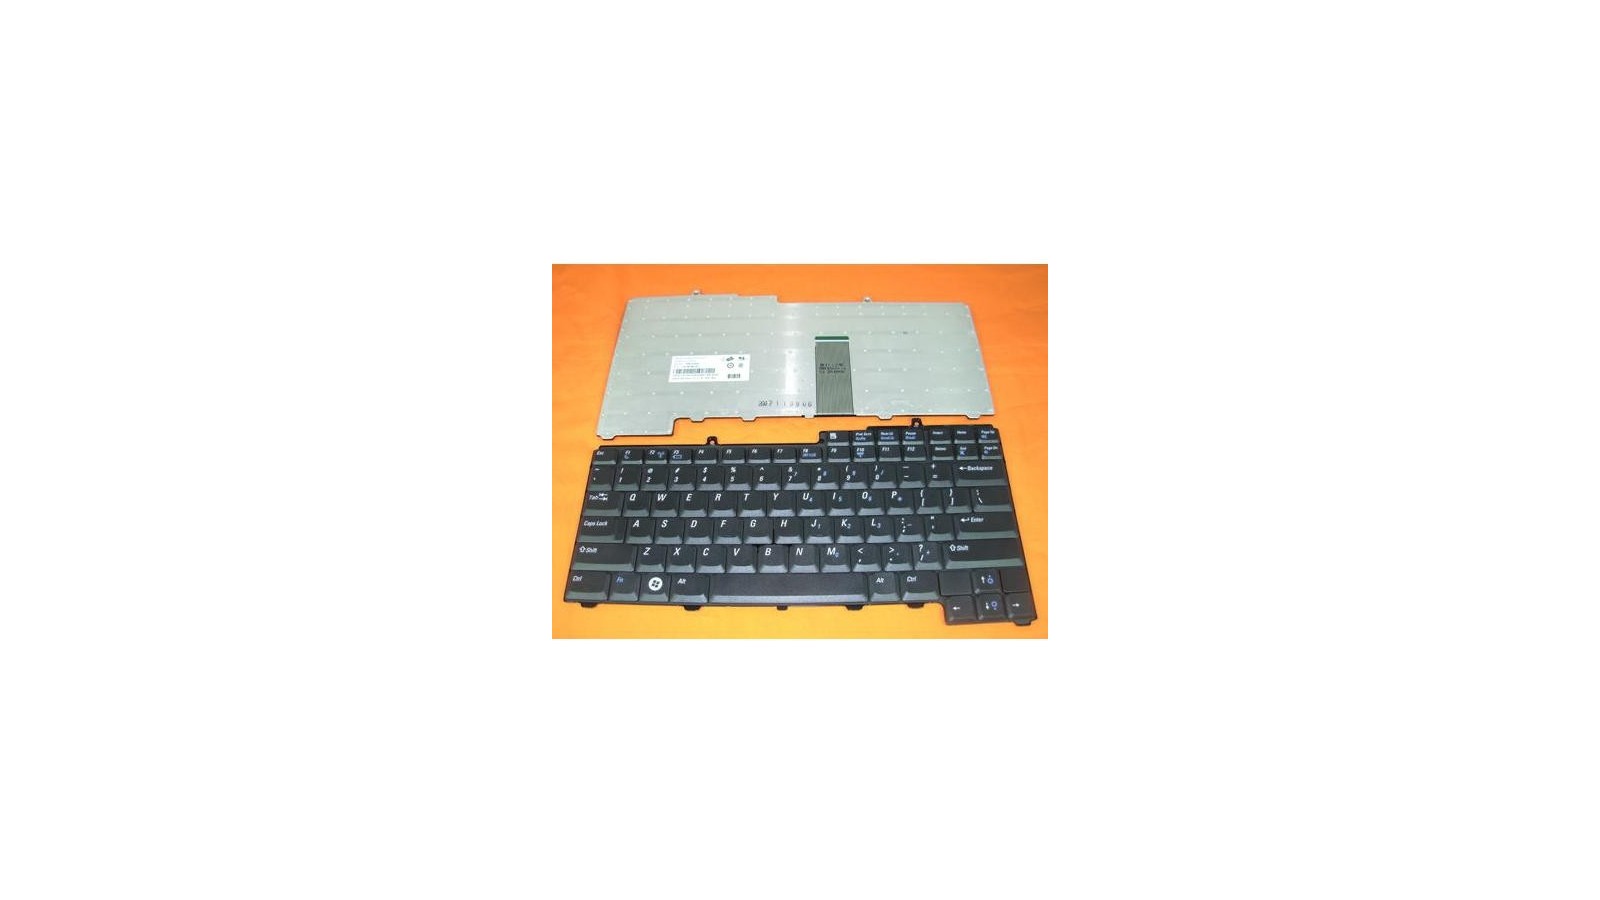 Tastiera originale nera italiana per notebook Dell Precision M90 XPS M140 XPS M1710